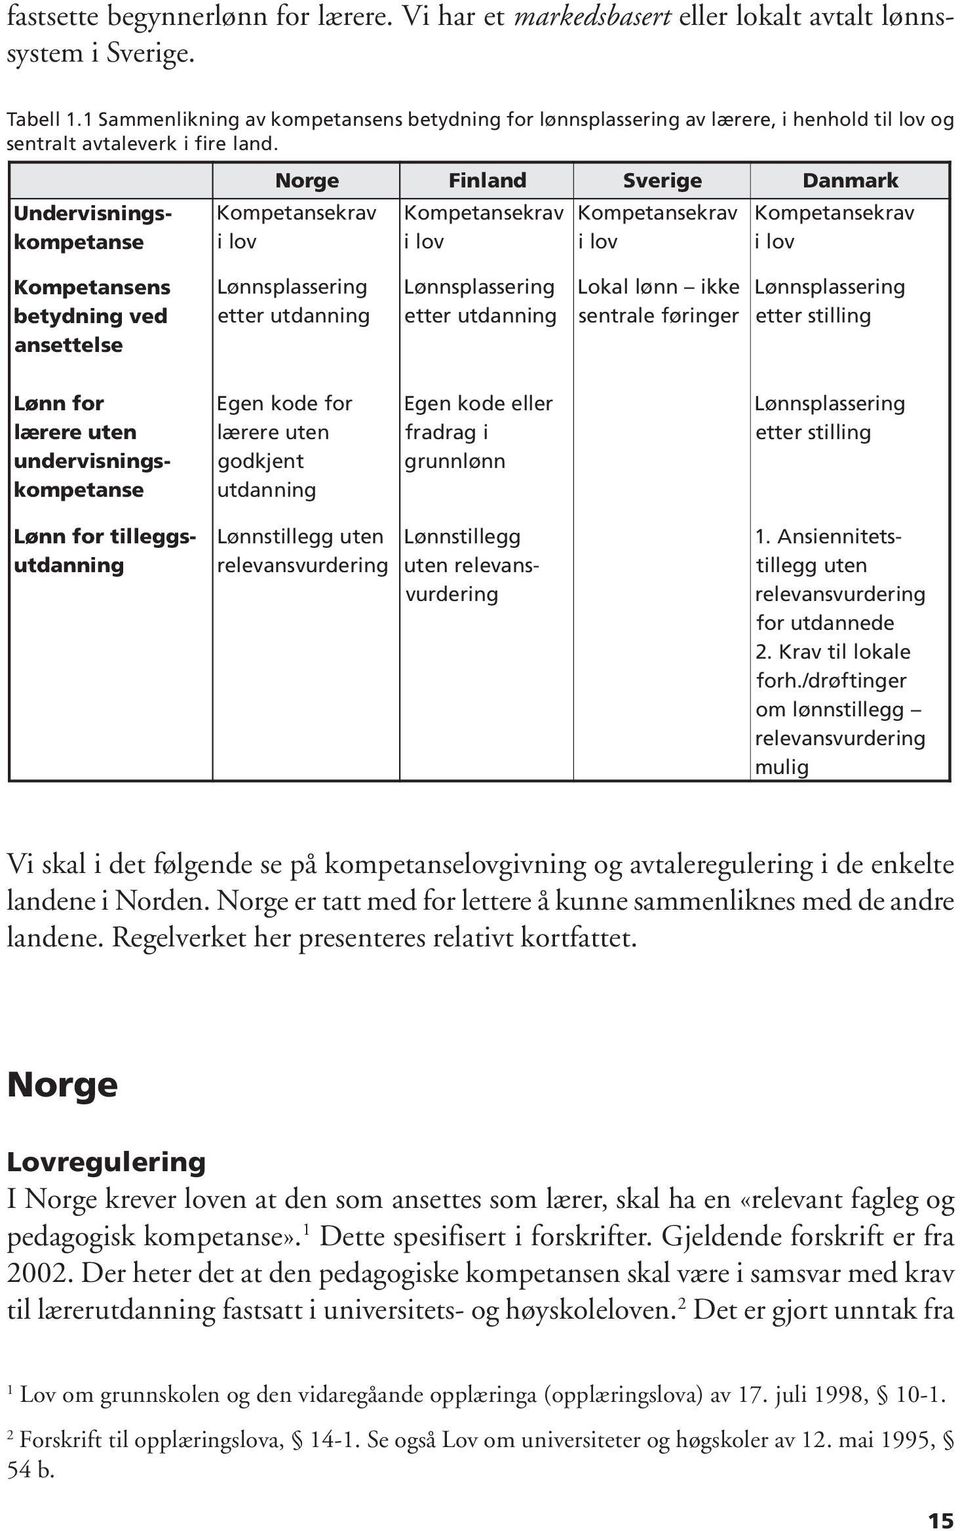 Åsmund Arup Seip. Kompetanse, lønn og arbeidstid Regulering av  arbeidsvilkår for lærere i Norden - PDF Gratis nedlasting